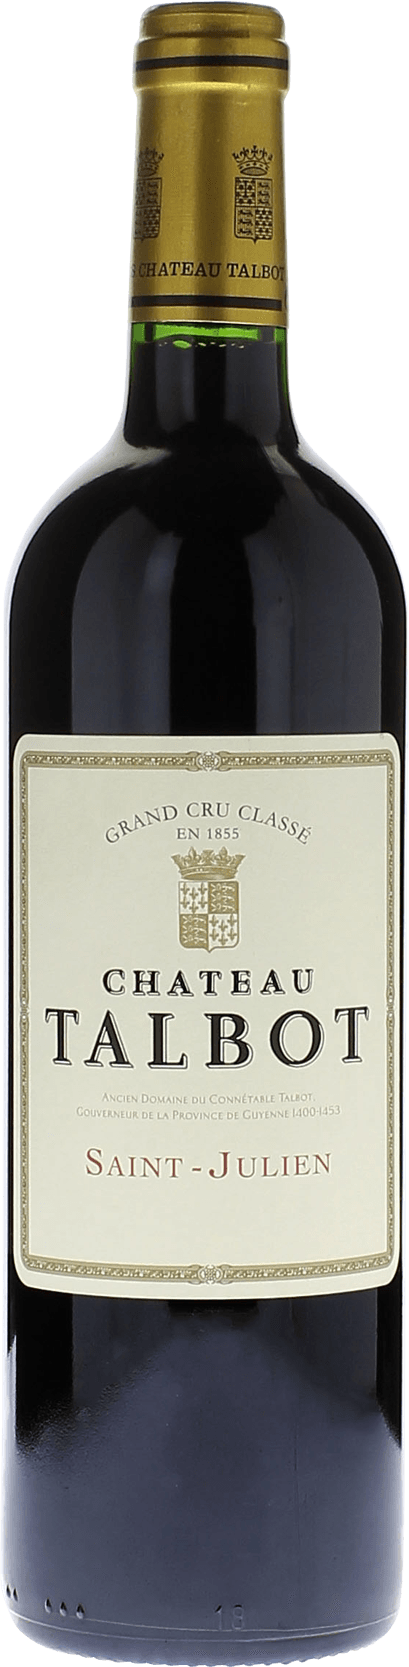 Talbot 1986 4me Grand cru class Saint-Julien, Bordeaux rouge